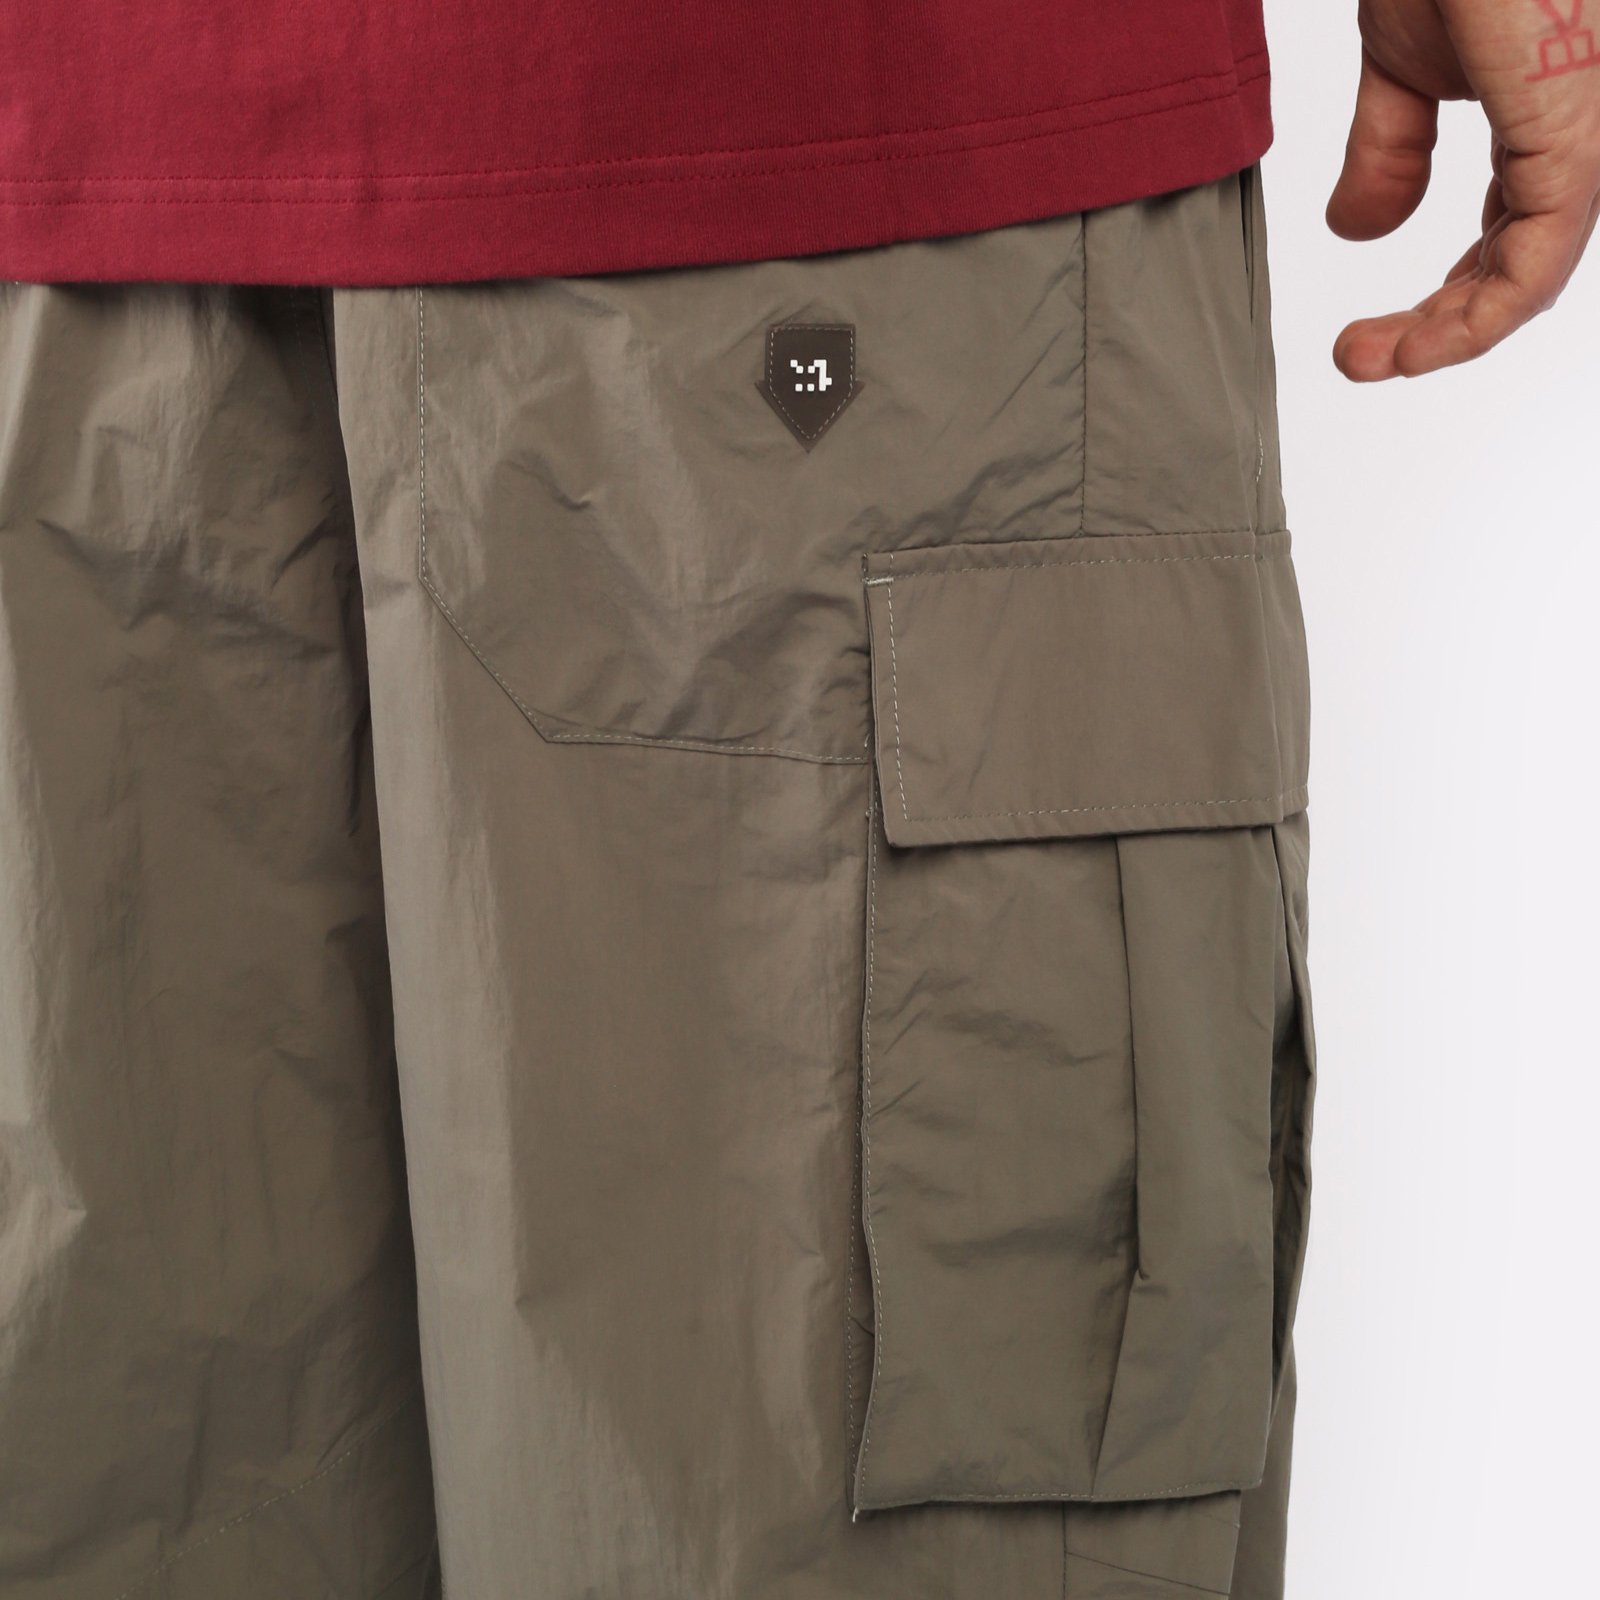 мужские брюки KRAKATAU Rm176-52  (Rm176-52-елово-сер)  - цена, описание, фото 4